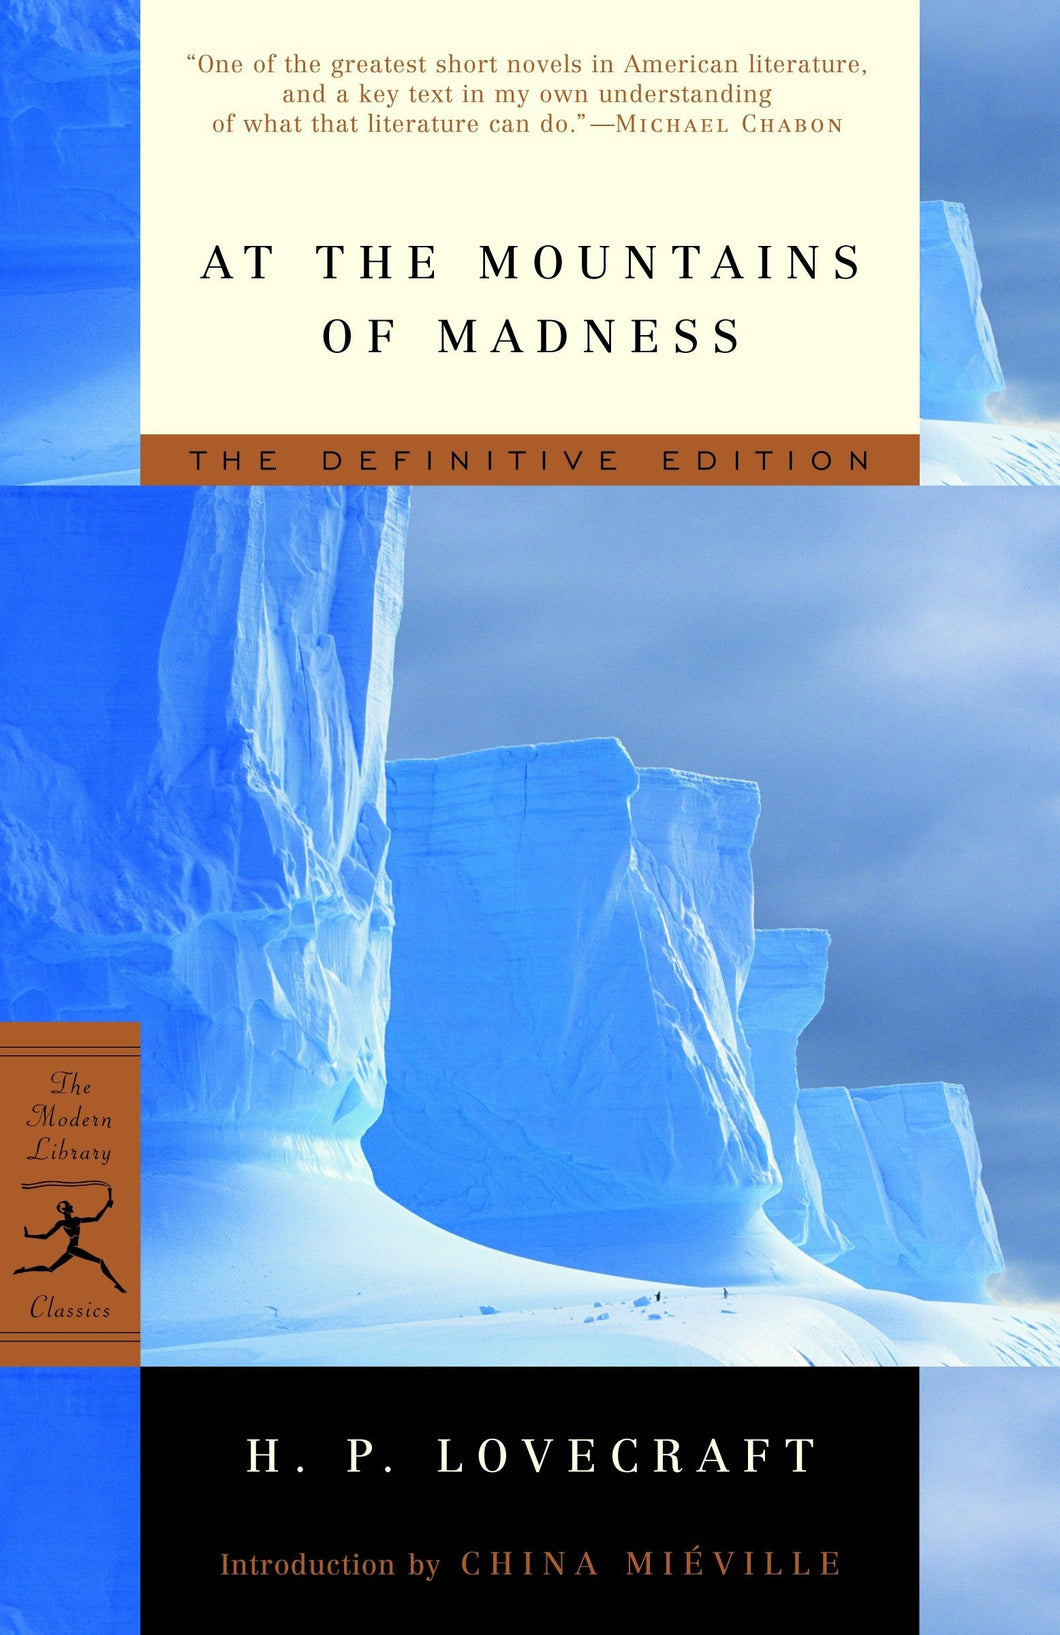 At the Mountains of Madness : The Definitive Edition ร้านหนังสือและสิ่งของ เป็นร้านหนังสือภาษาอังกฤษหายาก และร้านกาแฟ หรือ บุ๊คคาเฟ่ ตั้งอยู่สุขุมวิท กรุงเทพ